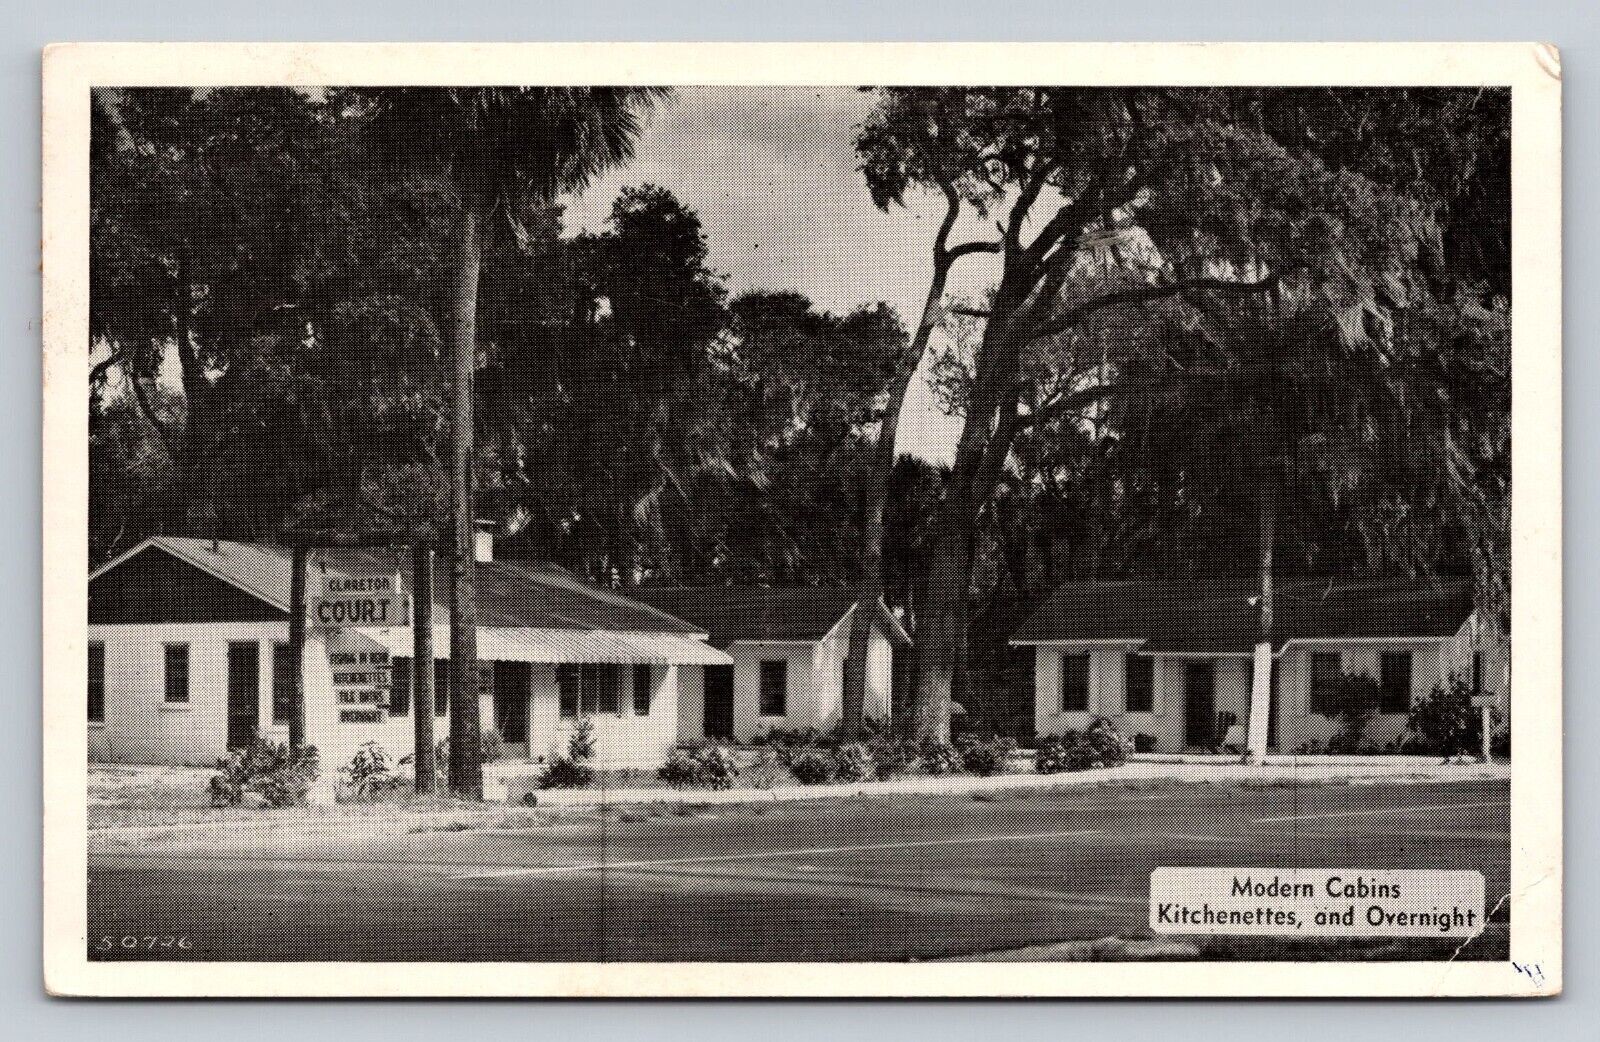 1953 Vintage Resort USA PC Clareton Court New Smyrna Beach FL Modern Cabins